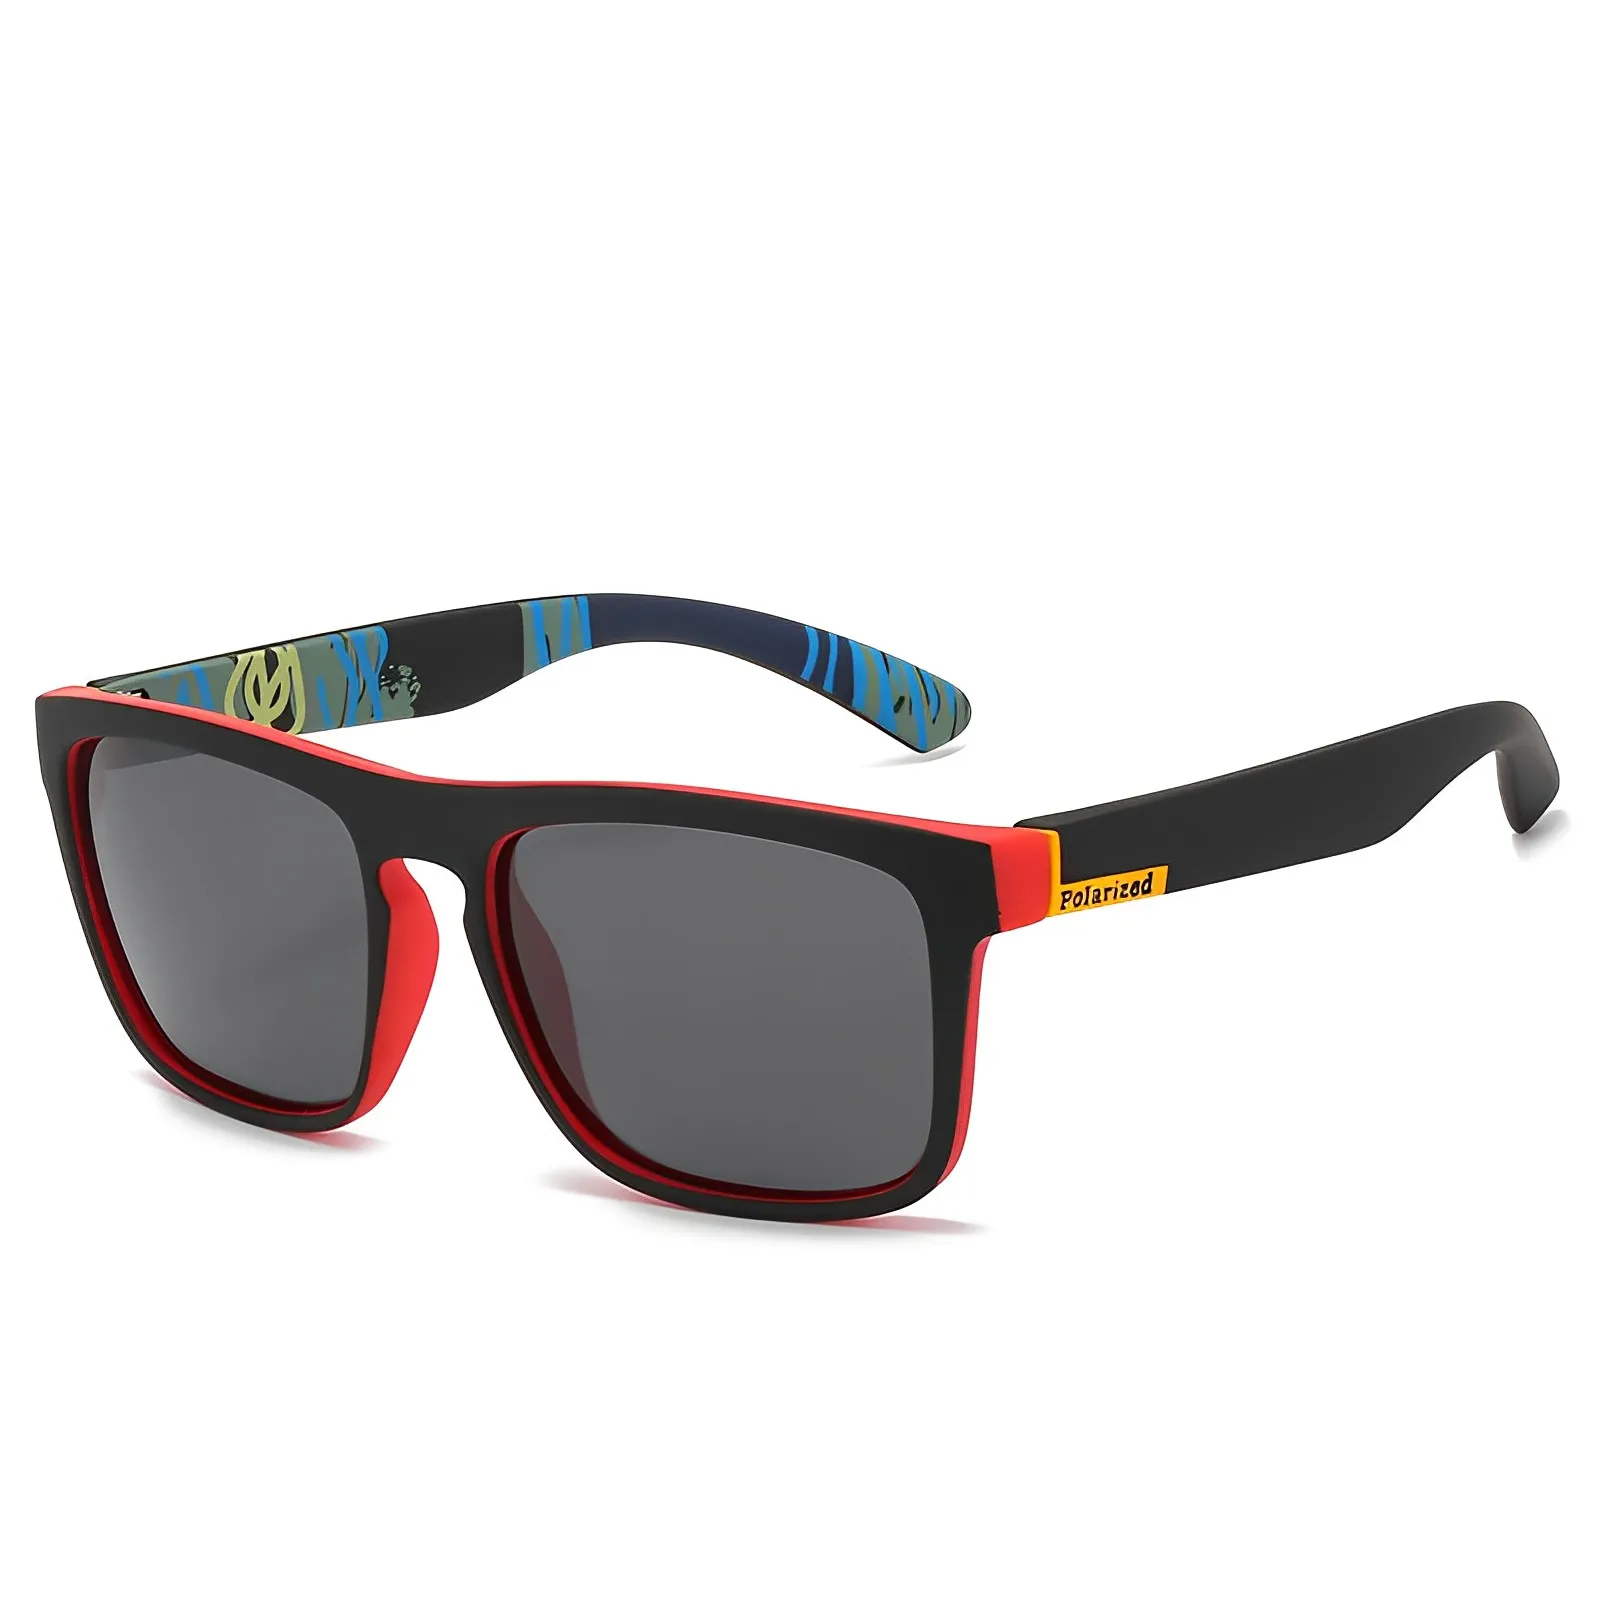 Herren-Sonnenbrille, polarisierte Farbe, für Nachtsicht, Autofahren und Dirtbike-Motorradfahren